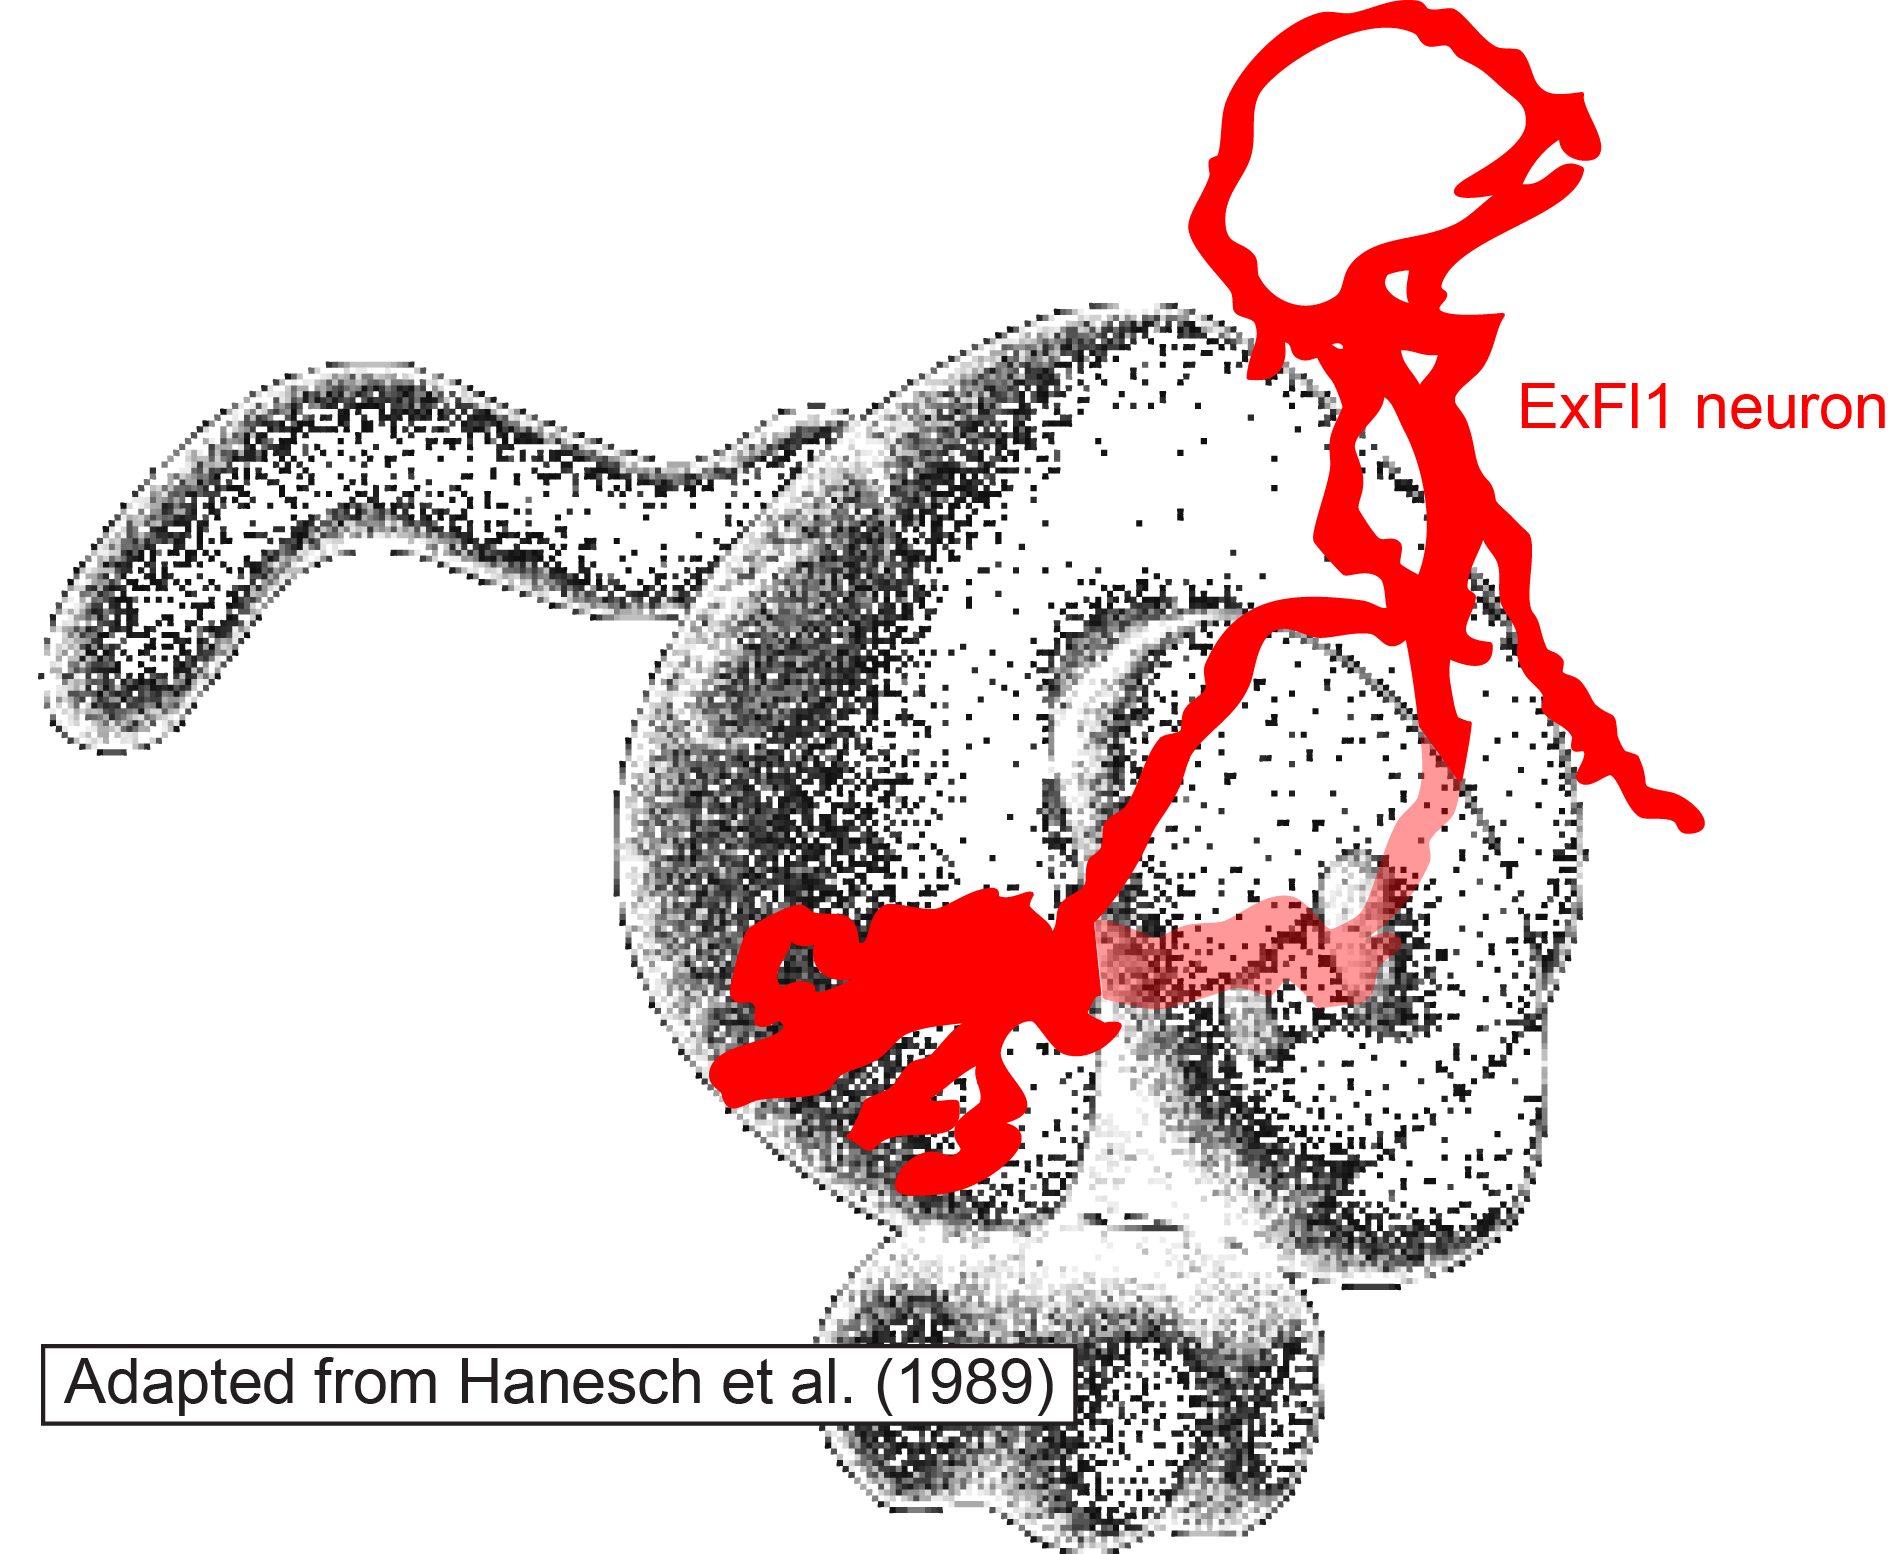 ExFl1 neuron with central complex neuropils